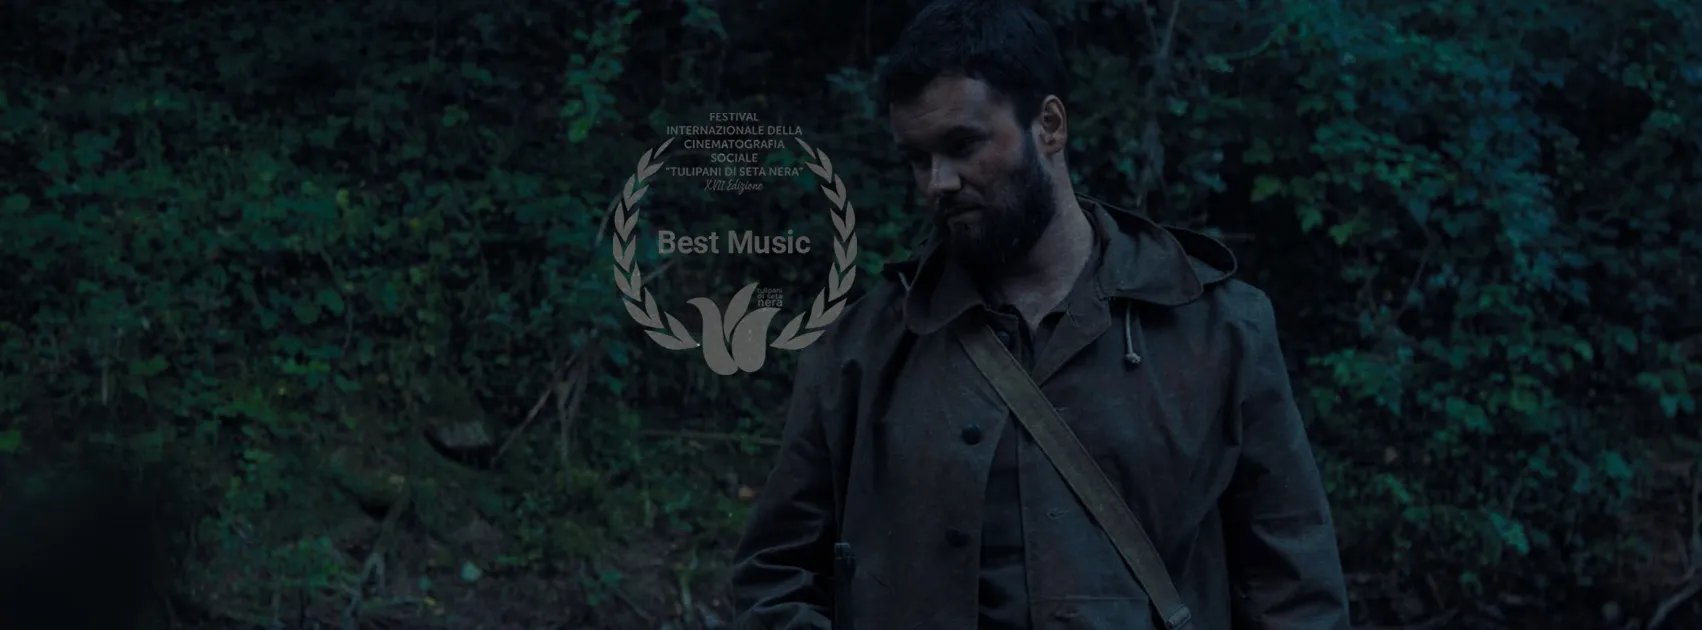 Il cortometraggio "Anima" di Andrea Baglio vince il premio "Migliori musiche" al TSN